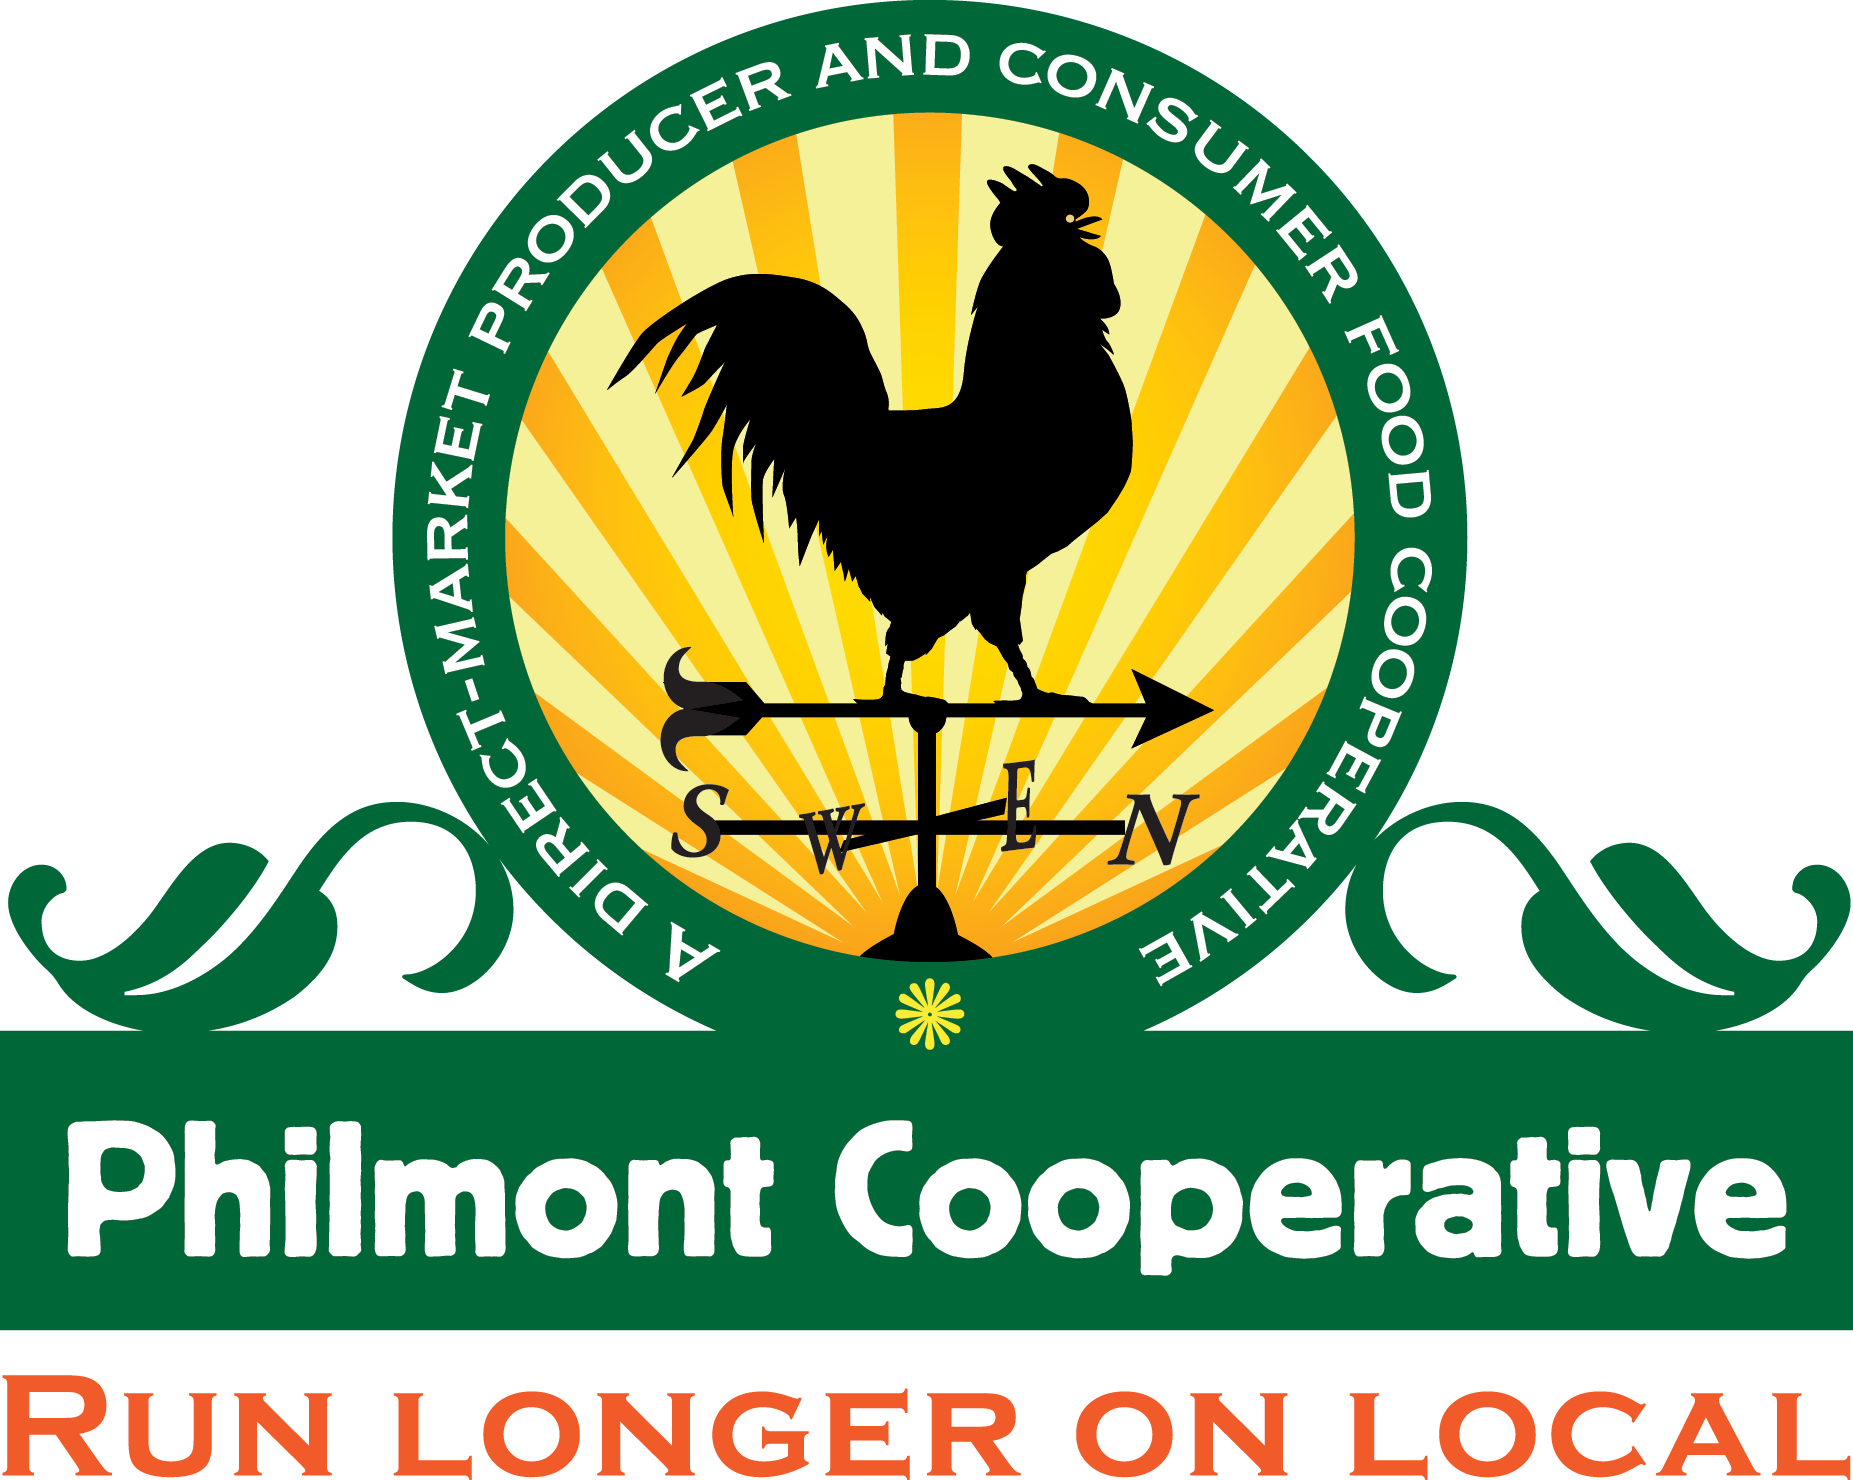 Philmont Cooperative